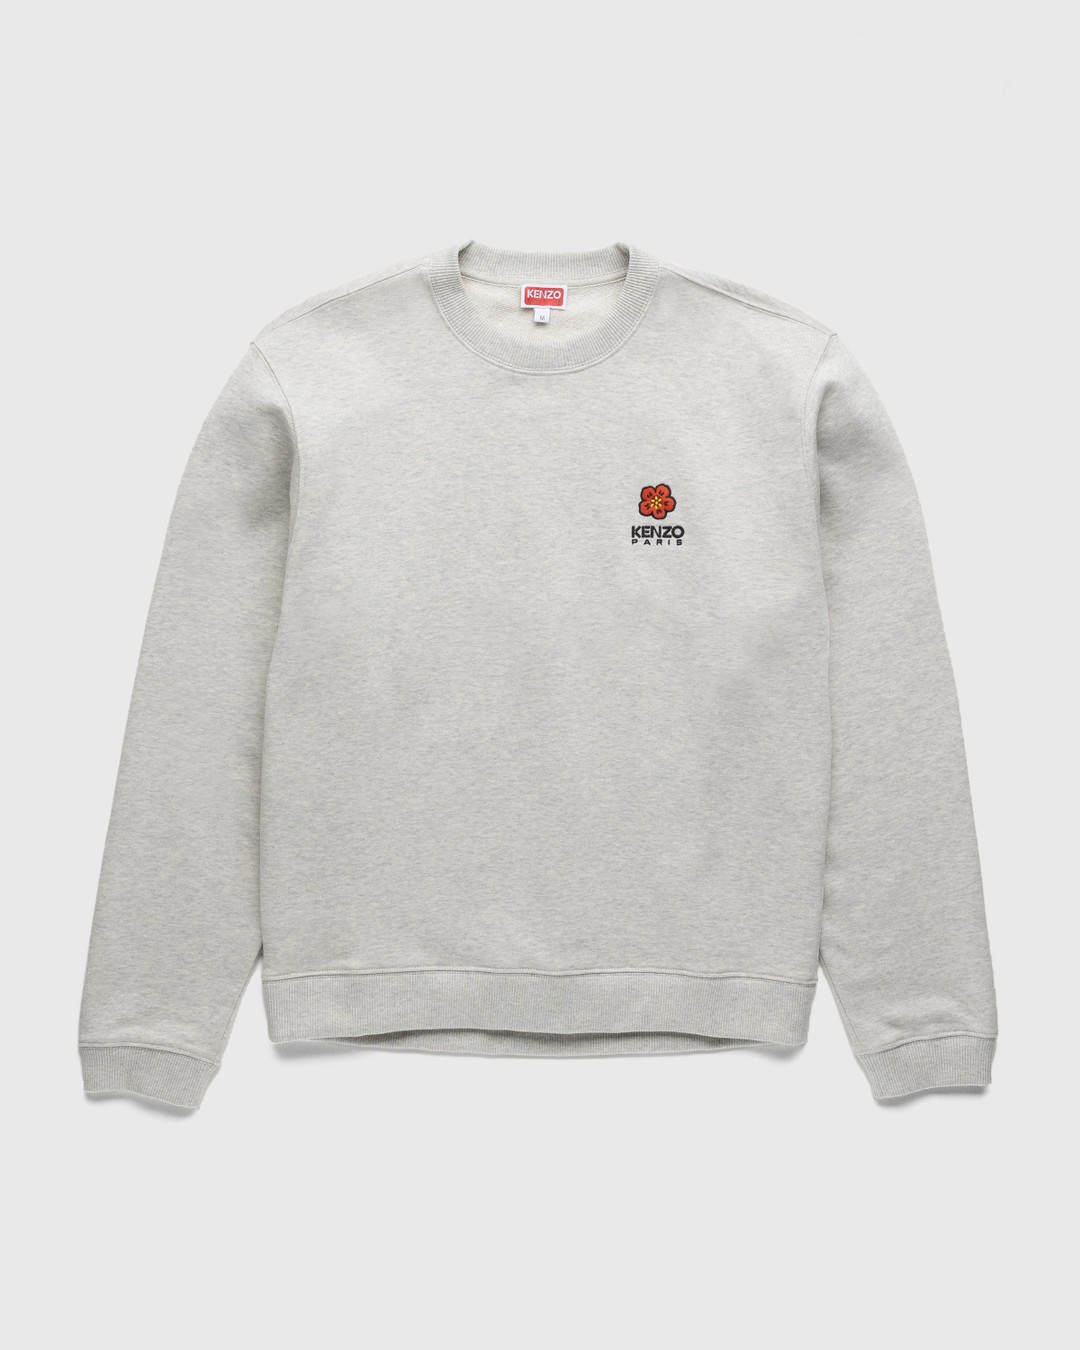 Kenzo – Boke Flower Crest Sweatshirt Pale Grey - Sweatshirts - Grey - Image 1